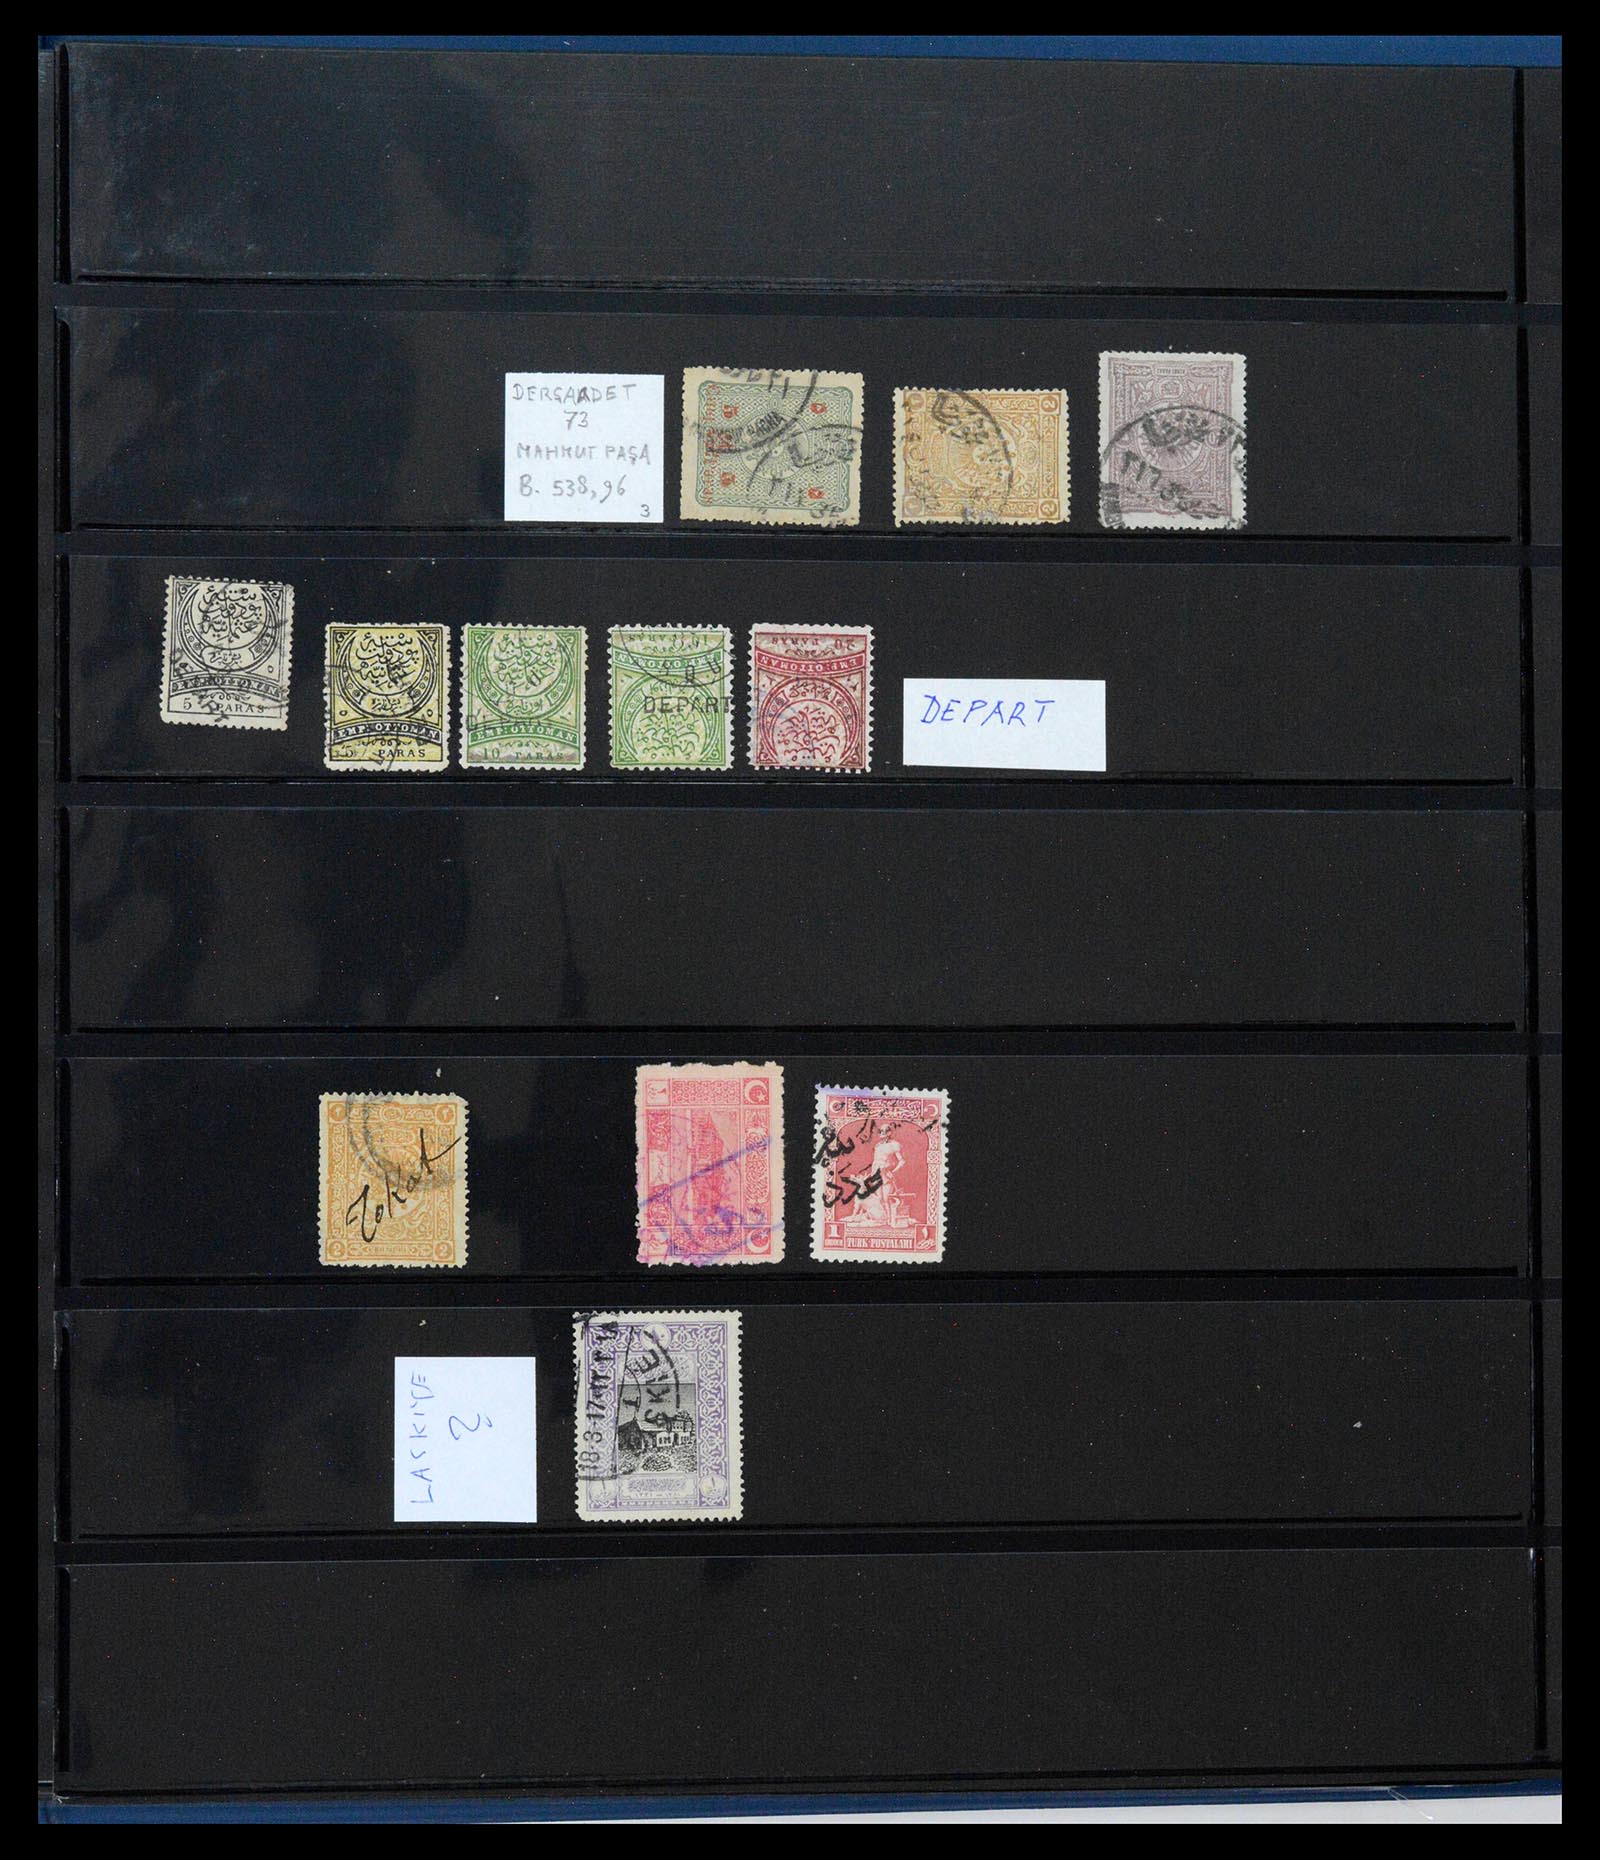 39345 0426 - Postzegelverzameling 39345 Turkije supercollectie stempels 1865-1930.